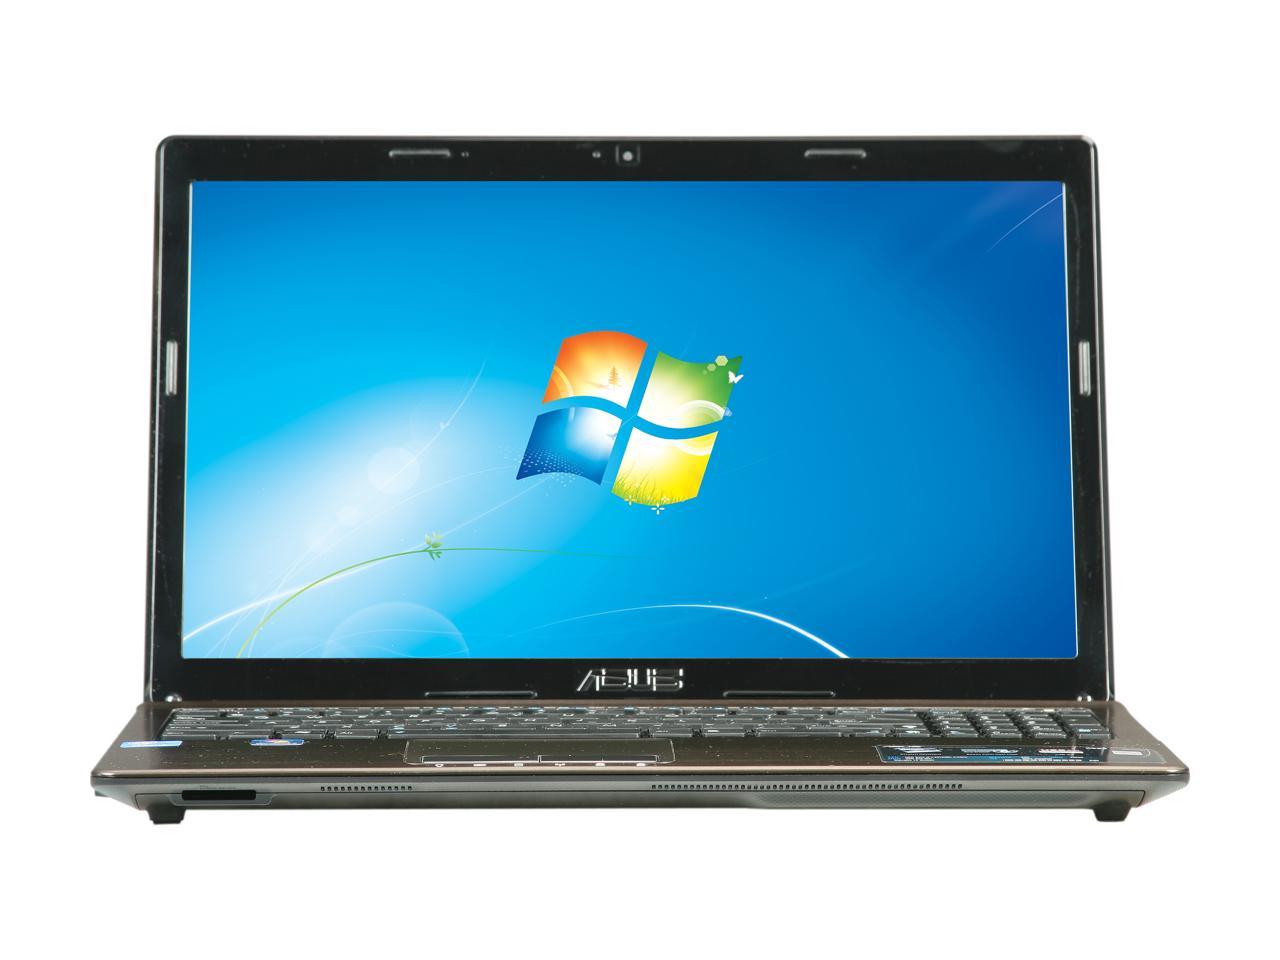 Refurbished: ASUS Laptop K53 Series Intel Core i7 2nd Gen 2670QM (2